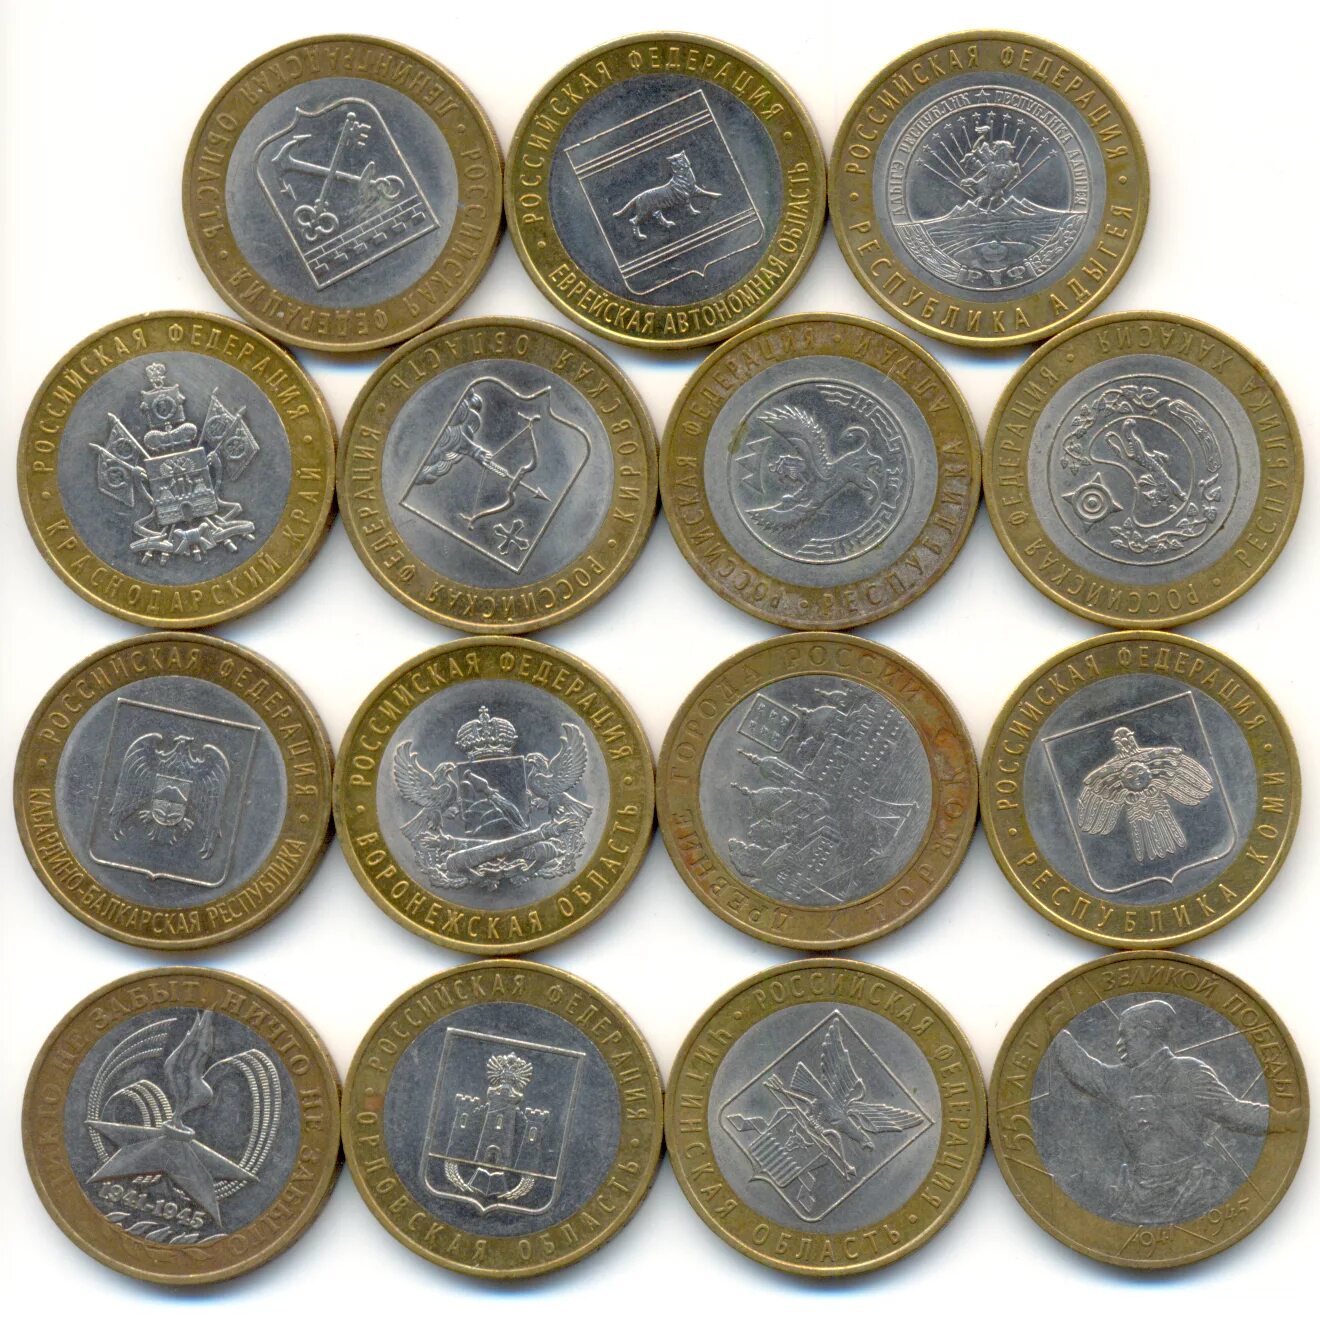 России нужны рубли. Коллекционные монеты. Юбилейные монеты. Коллекционные юбилейные монеты. Коллекция юбилейных монет.